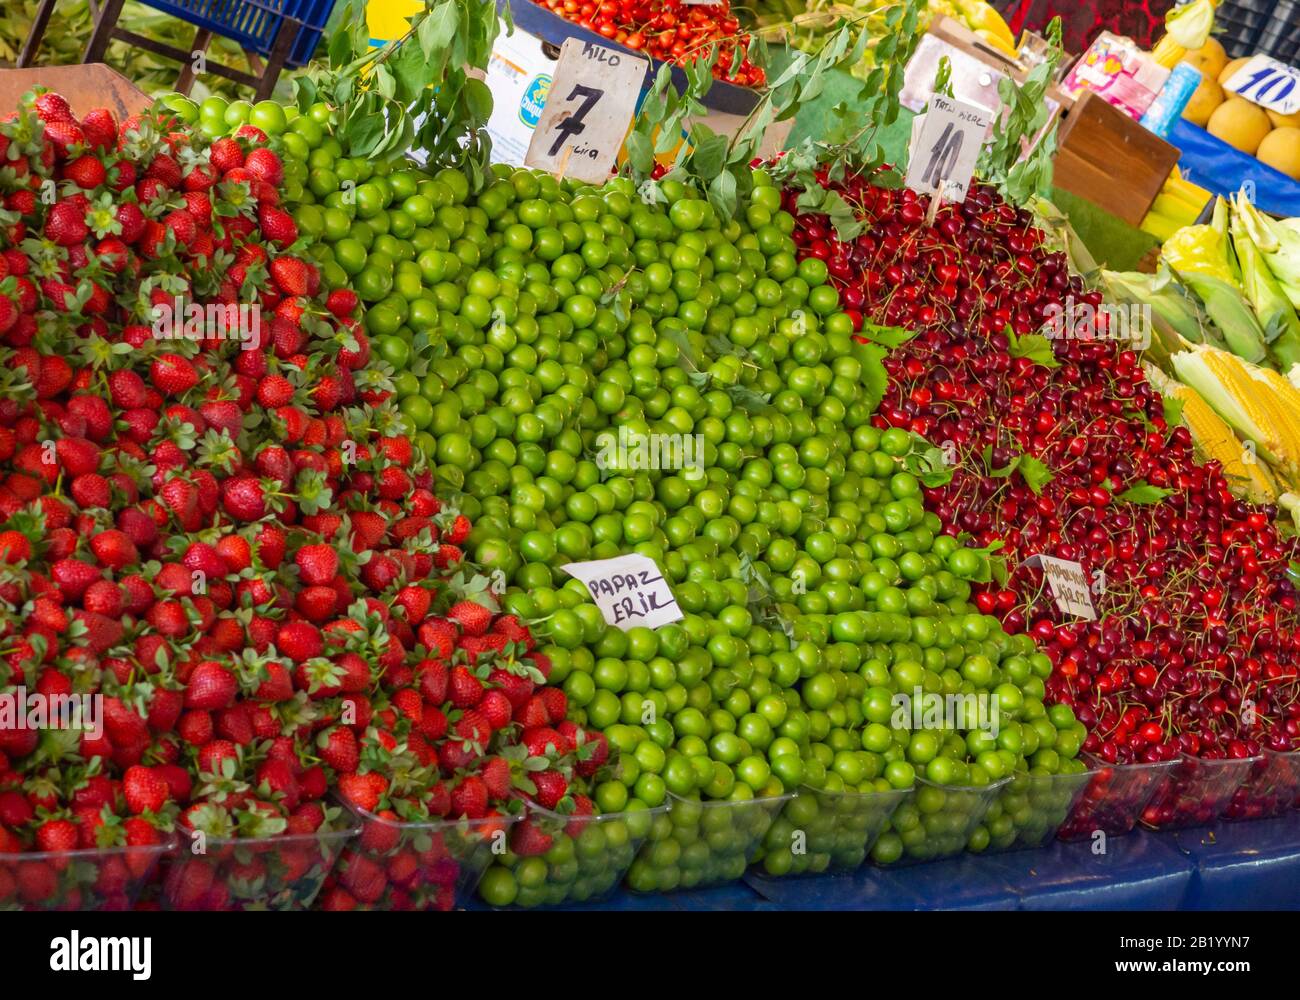 fraises, prunes et cerises en vente sur un marché Banque D'Images